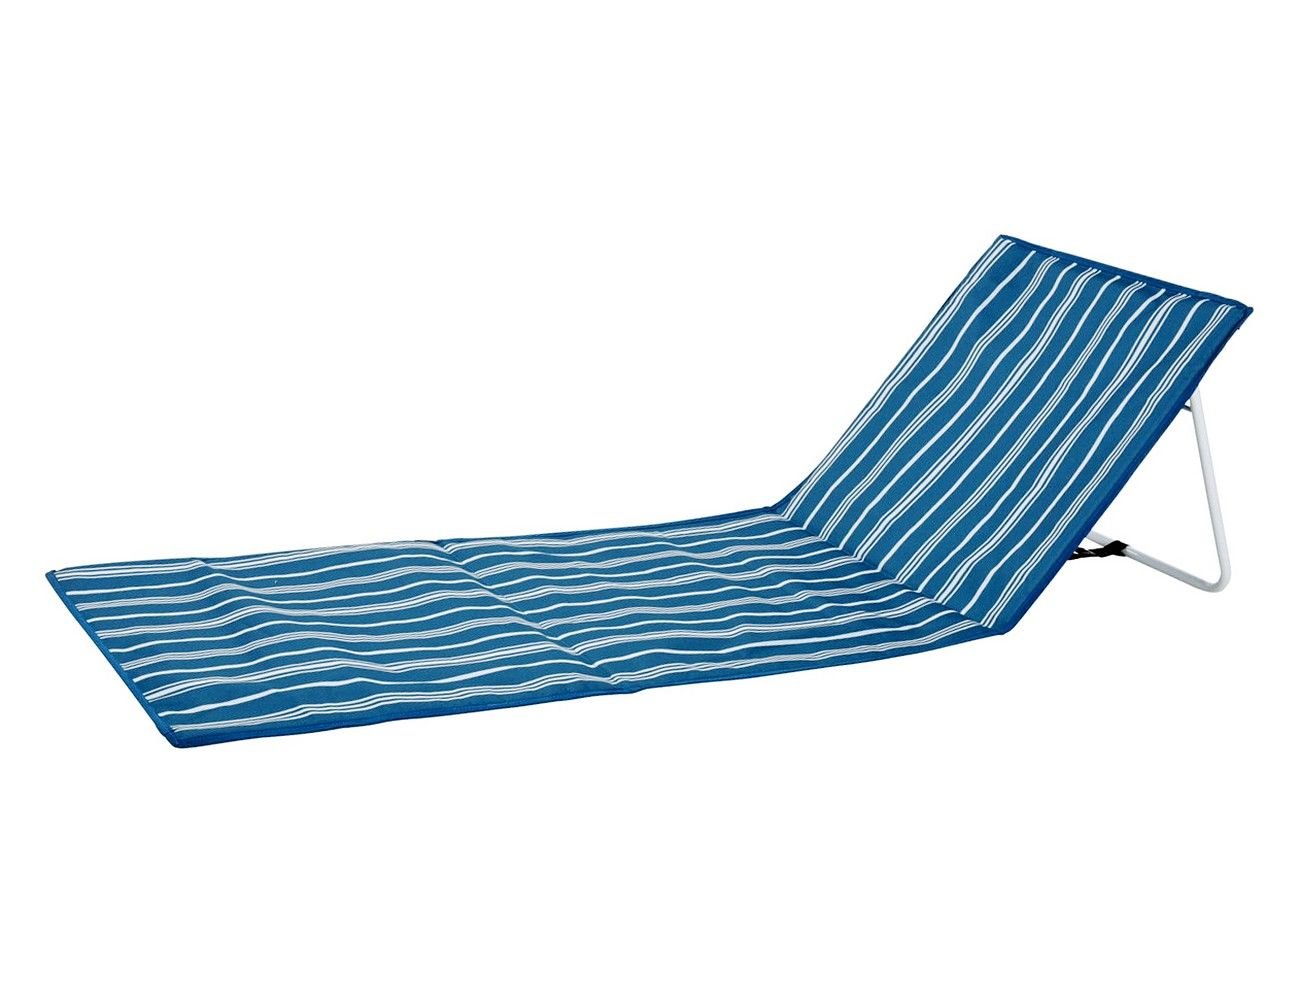 Складной пляжный коврик ПЛИЕР, синий, 158х54 см, Koopman International